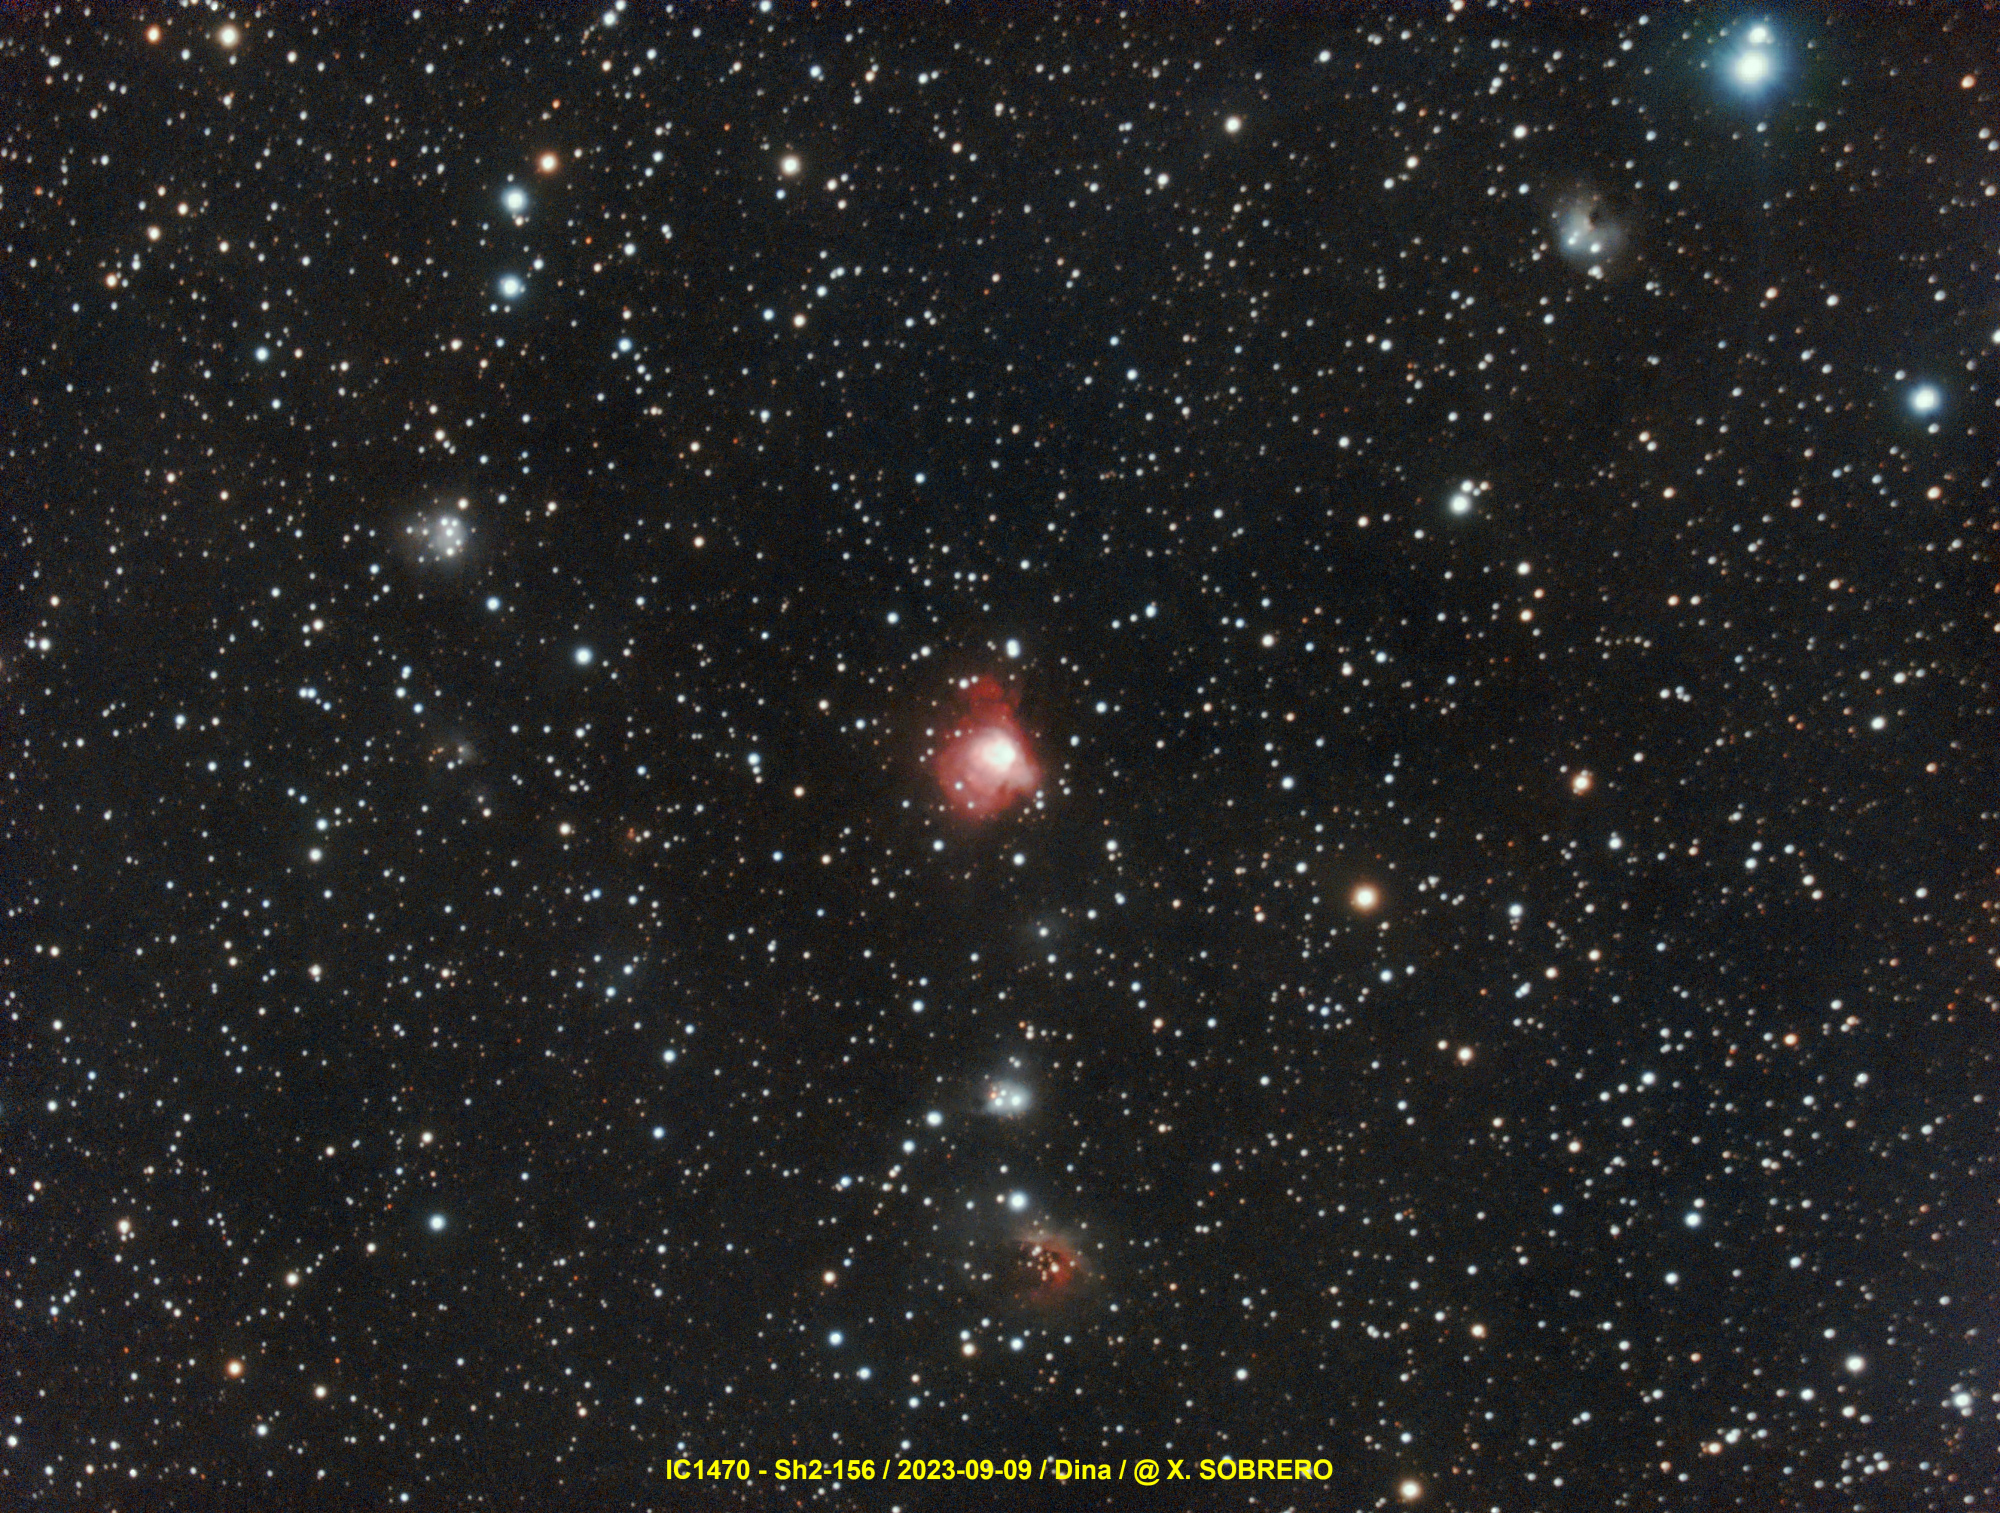 IC1470_2023-09-09_Dina.thumb.jpg.7ed0f7813397f991bc65675d11faa3cc.jpg